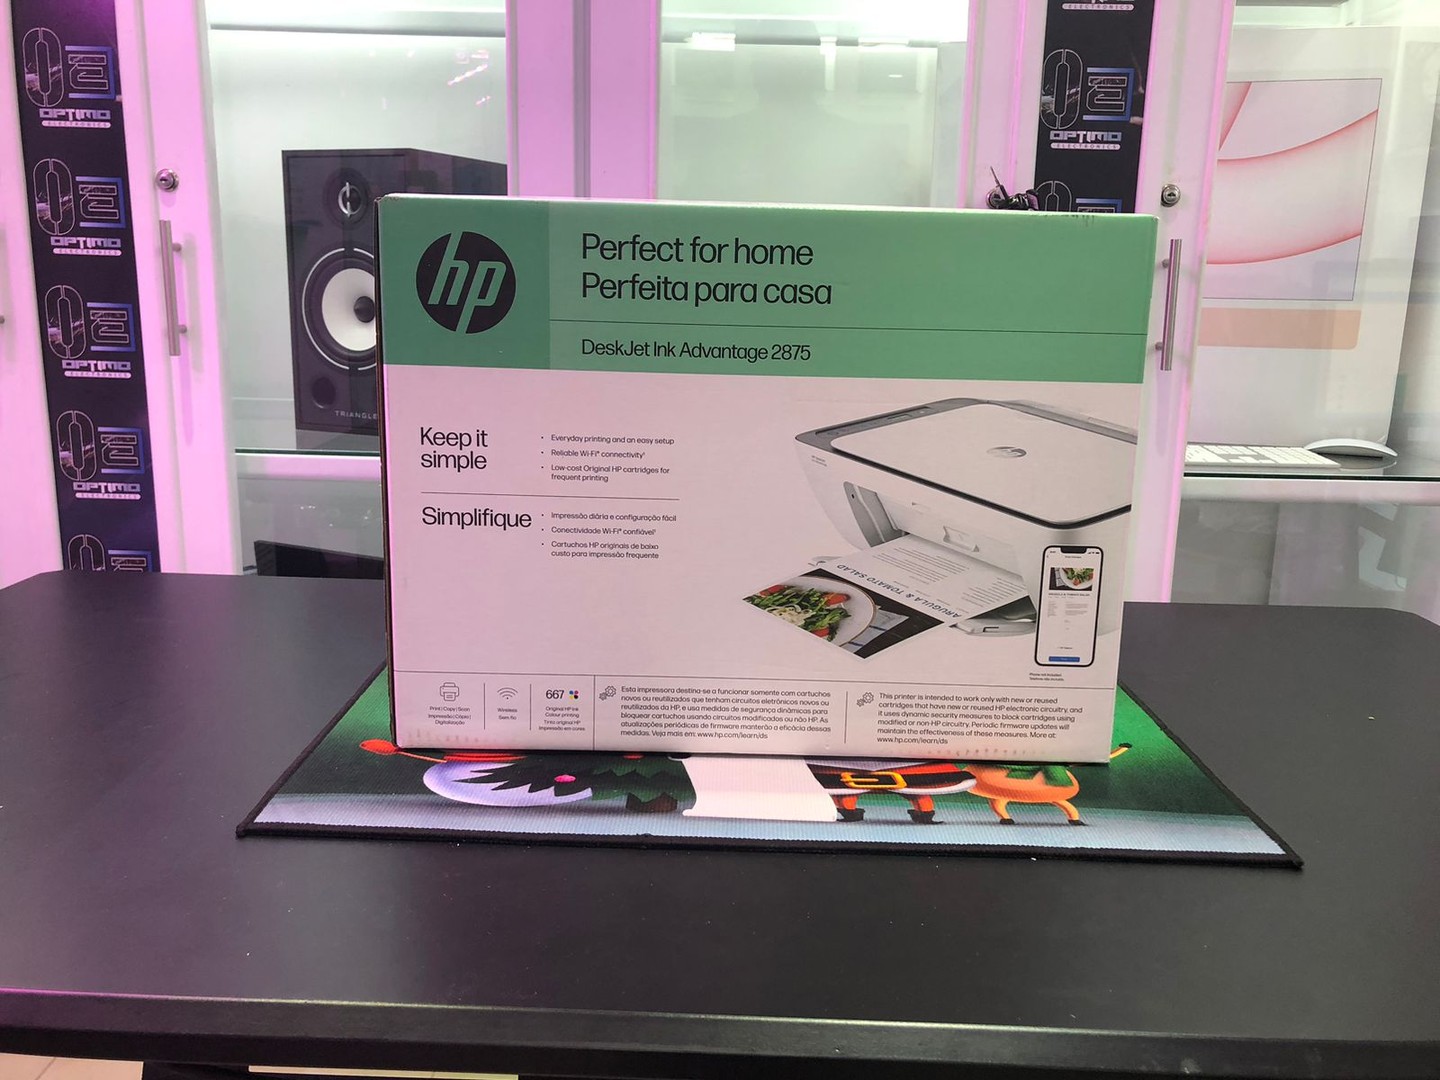 impresoras y scanners - Impresora Multifunción a wifi y Bluetooth HP 2875 Todo en 1, Nueva y Sellada